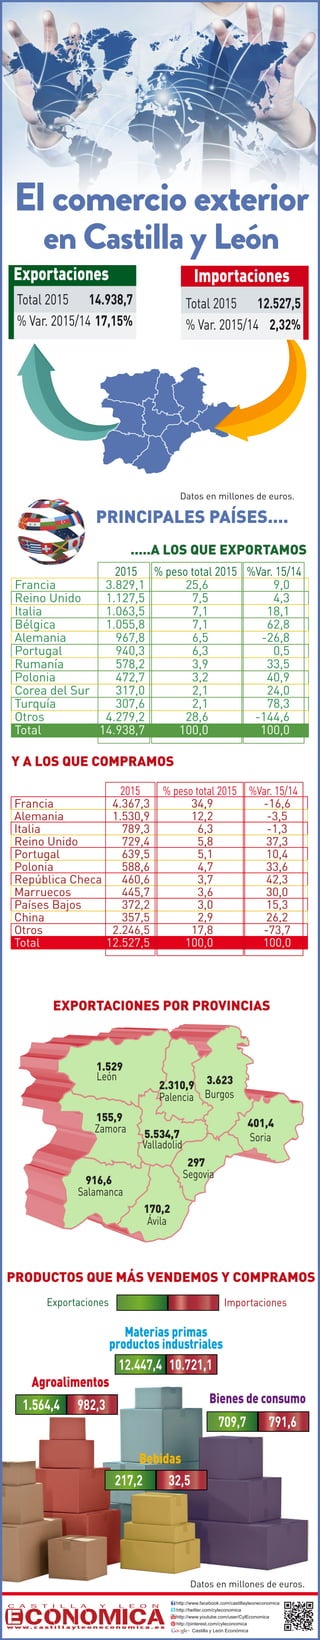 PRINCIPALES PAÍSES....
http://www.facebook.com/castillayleoneconomica
http://twitter.com/cyleconomica
http://www.youtube.com/user/CylEconomica
http://pinterest.com/cyleconomica
Castilla y León Económica
w w w . c a s t i l l a y l e o n e c o n o m i c a . e s
Datos en millones de euros.
Datos en millones de euros.
EXPORTACIONES POR PROVINCIAS
.....A LOS QUE EXPORTAMOS
Y A LOS QUE COMPRAMOS
PRODUCTOS QUE MÁS VENDEMOS Y COMPRAMOS
Exportaciones Importaciones
2015 % peso total 2015 %Var. 15/14
Francia 4.367,3 34,9 -16,6
Alemania 1.530,9 12,2 -3,5
Italia 789,3 6,3 -1,3
Reino Unido 729,4 5,8 37,3
Portugal 639,5 5,1 10,4
Polonia 588,6 4,7 33,6
República Checa 460,6 3,7 42,3
Marruecos 445,7 3,6 30,0
Países Bajos 372,2 3,0 15,3
China 357,5 2,9 26,2
Otros 2.246,5 17,8 -73,7
Total 12.527,5 100,0 100,0
2015 % peso total 2015 %Var. 15/14
Francia 3.829,1 25,6 9,0
Reino Unido 1.127,5 7,5 4,3
Italia 1.063,5 7,1 18,1
Bélgica 1.055,8 7,1 62,8
Alemania 967,8 6,5 -26,8
Portugal 940,3 6,3 0,5
Rumanía 578,2 3,9 33,5
Polonia 472,7 3,2 40,9
Corea del Sur 317,0 2,1 24,0
Turquía 307,6 2,1 78,3
Otros 4.279,2 28,6 -144,6
Total 14.938,7 100,0 100,0
Burgos
León
Salamanca
Segovia
Soria
Valladolid
Zamora
170,2
3.623
1.529
916,6
297
401,4
5.534,7
155,9
Palencia
2.310,9
Ávila
El comercio exterior
en Castilla y León
Materias primas
productos industriales
Agroalimentos
Bienes de consumo
12.447,4 10.721,1
1.564,4 982,3
709,7 791,6
217,2 32,5
Bebidas
Total 2015 14.938,7
% Var. 2015/14 17,15%
Exportaciones Importaciones
Total 2015 12.527,5
% Var. 2015/14 2,32%
 